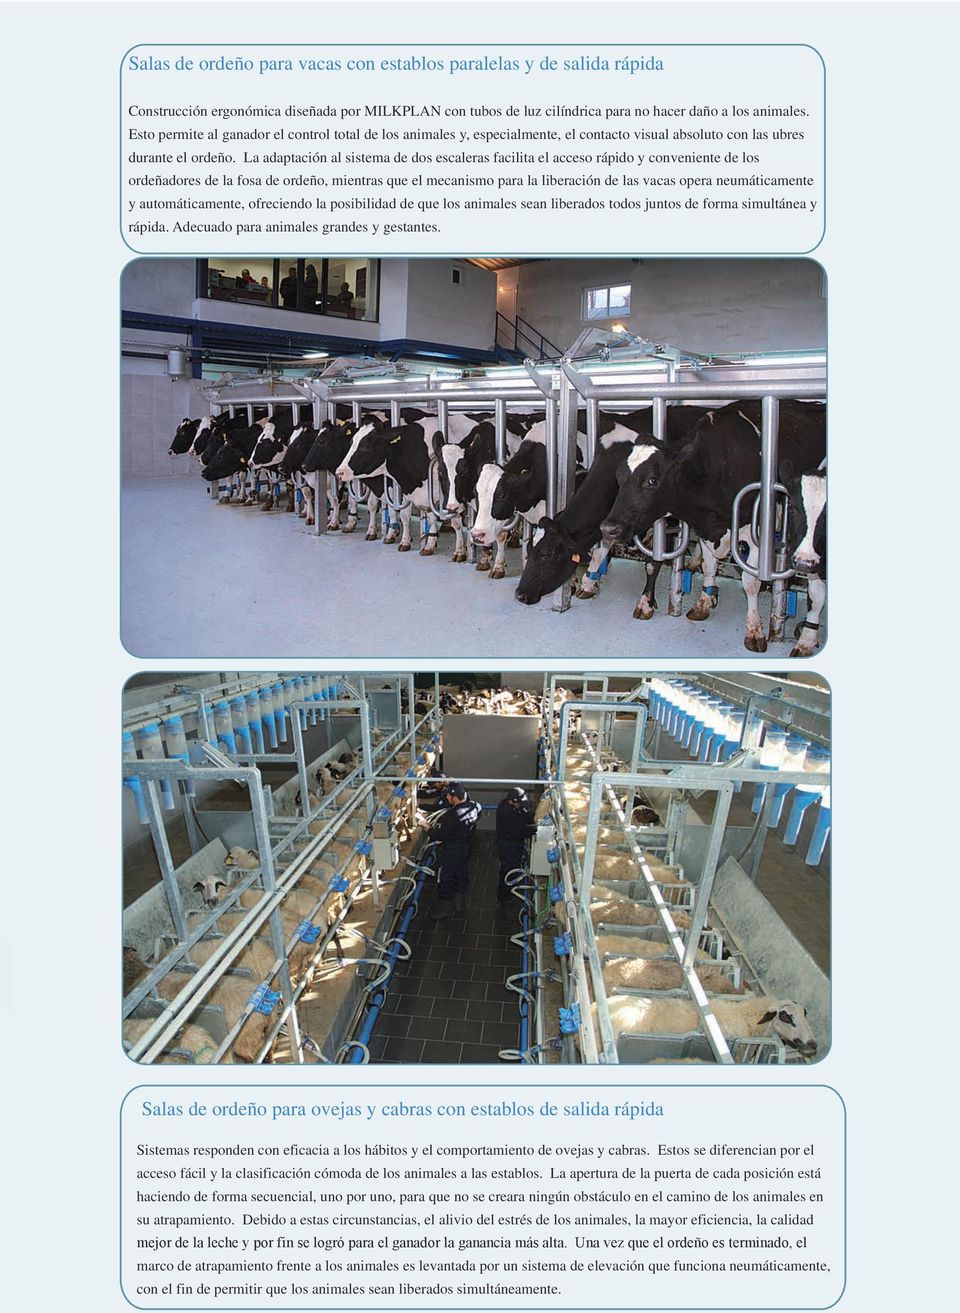 La adaptación al sistema de dos escaleras facilita el acceso rápido y conveniente de los ordeñadores de la fosa de ordeño, mientras que el mecanismo para la liberación de las vacas opera